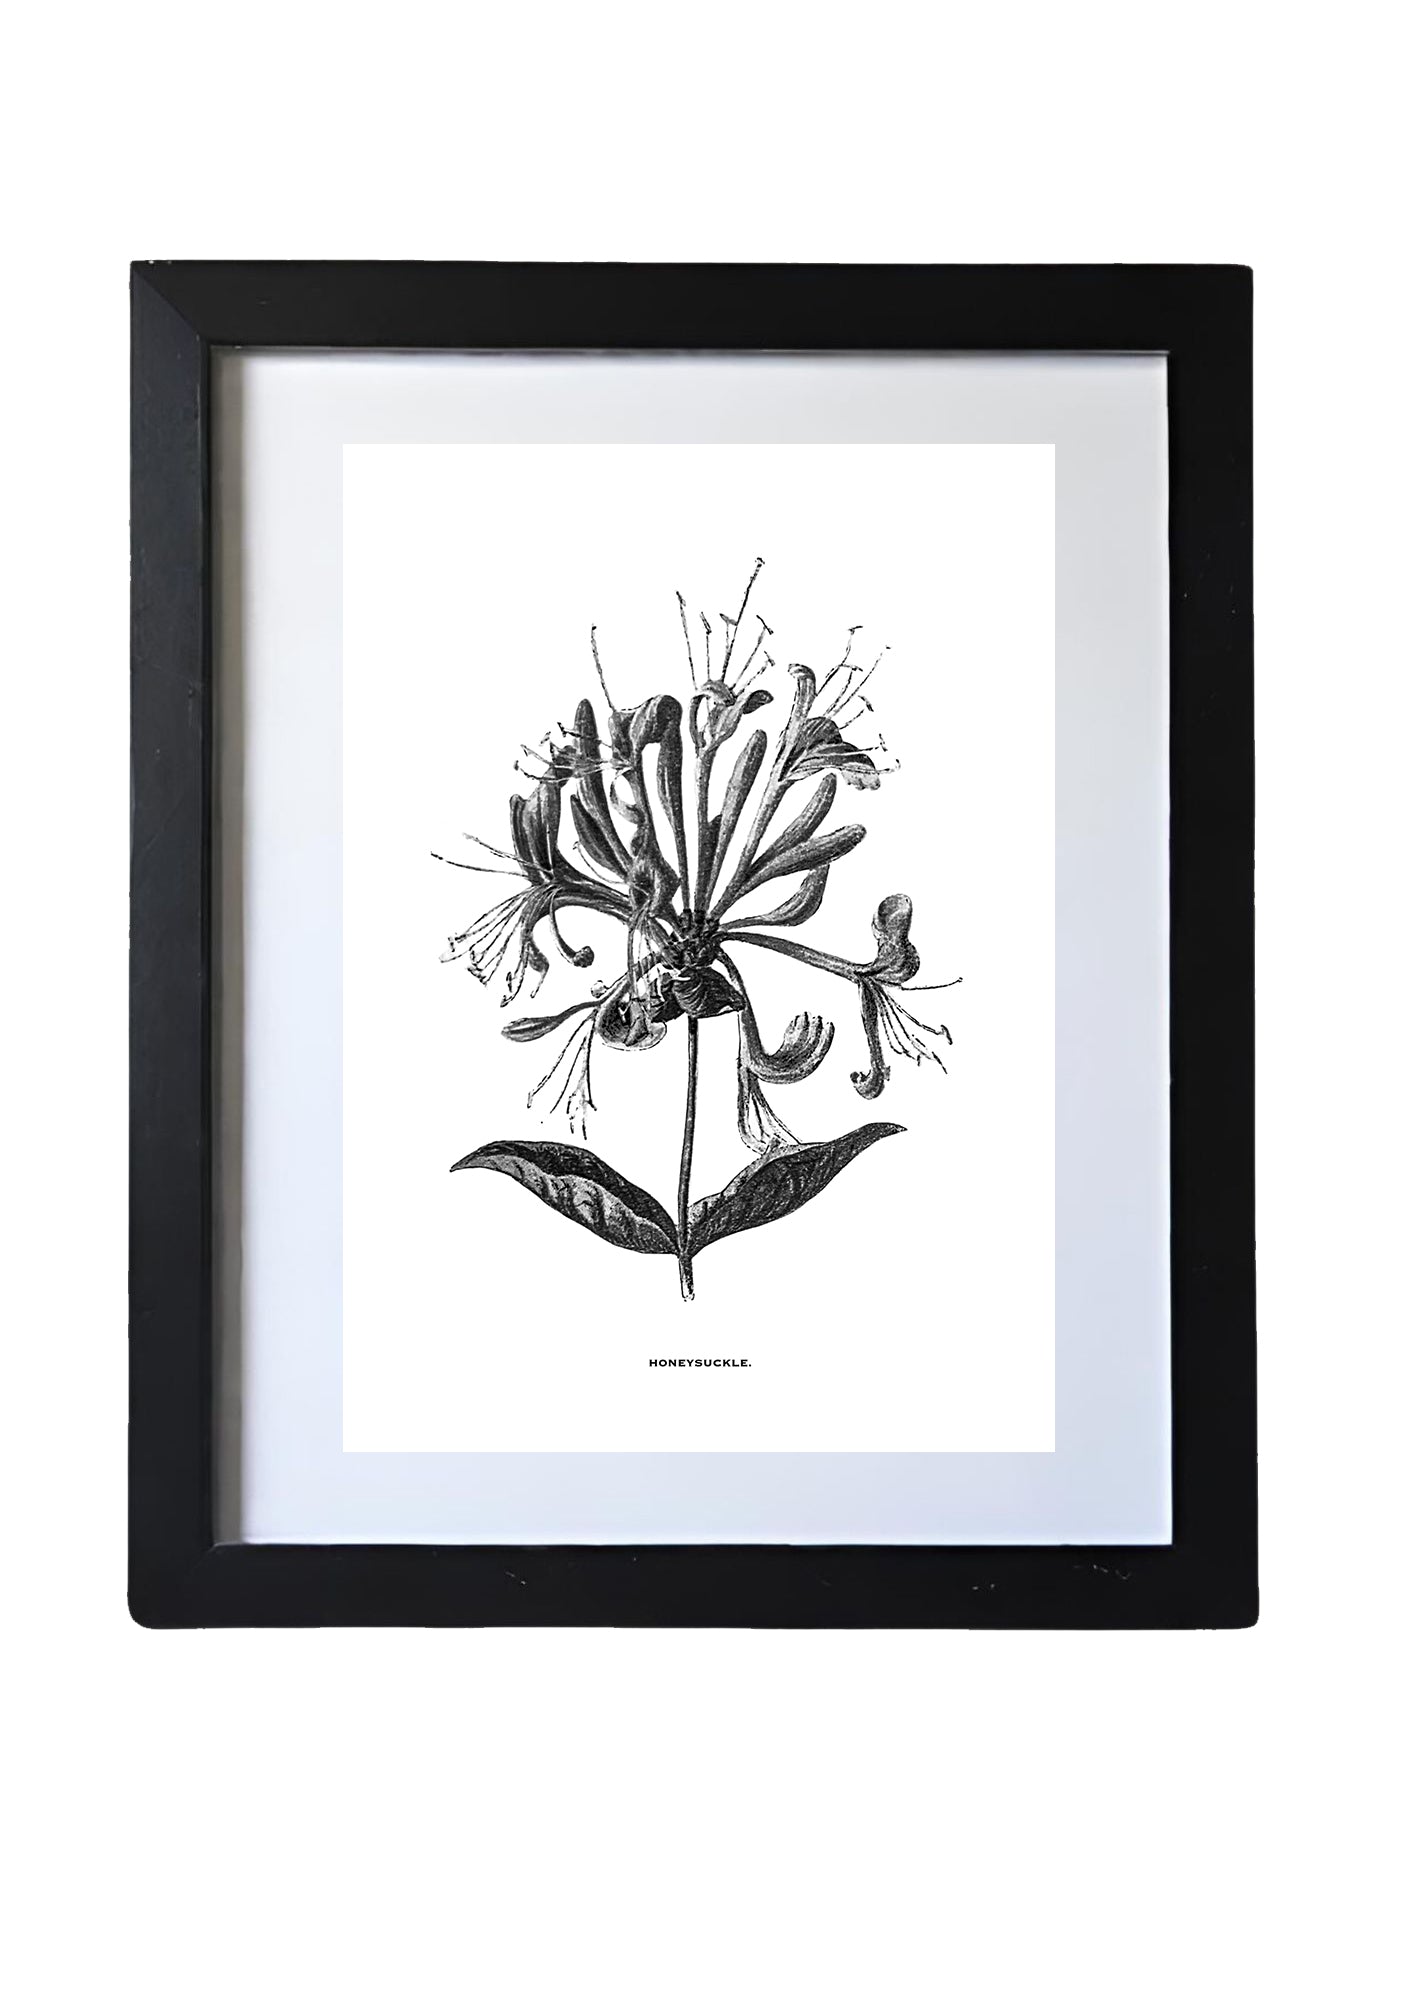 Framed Vintage Botanical Floral Art Prints: Set Of Four